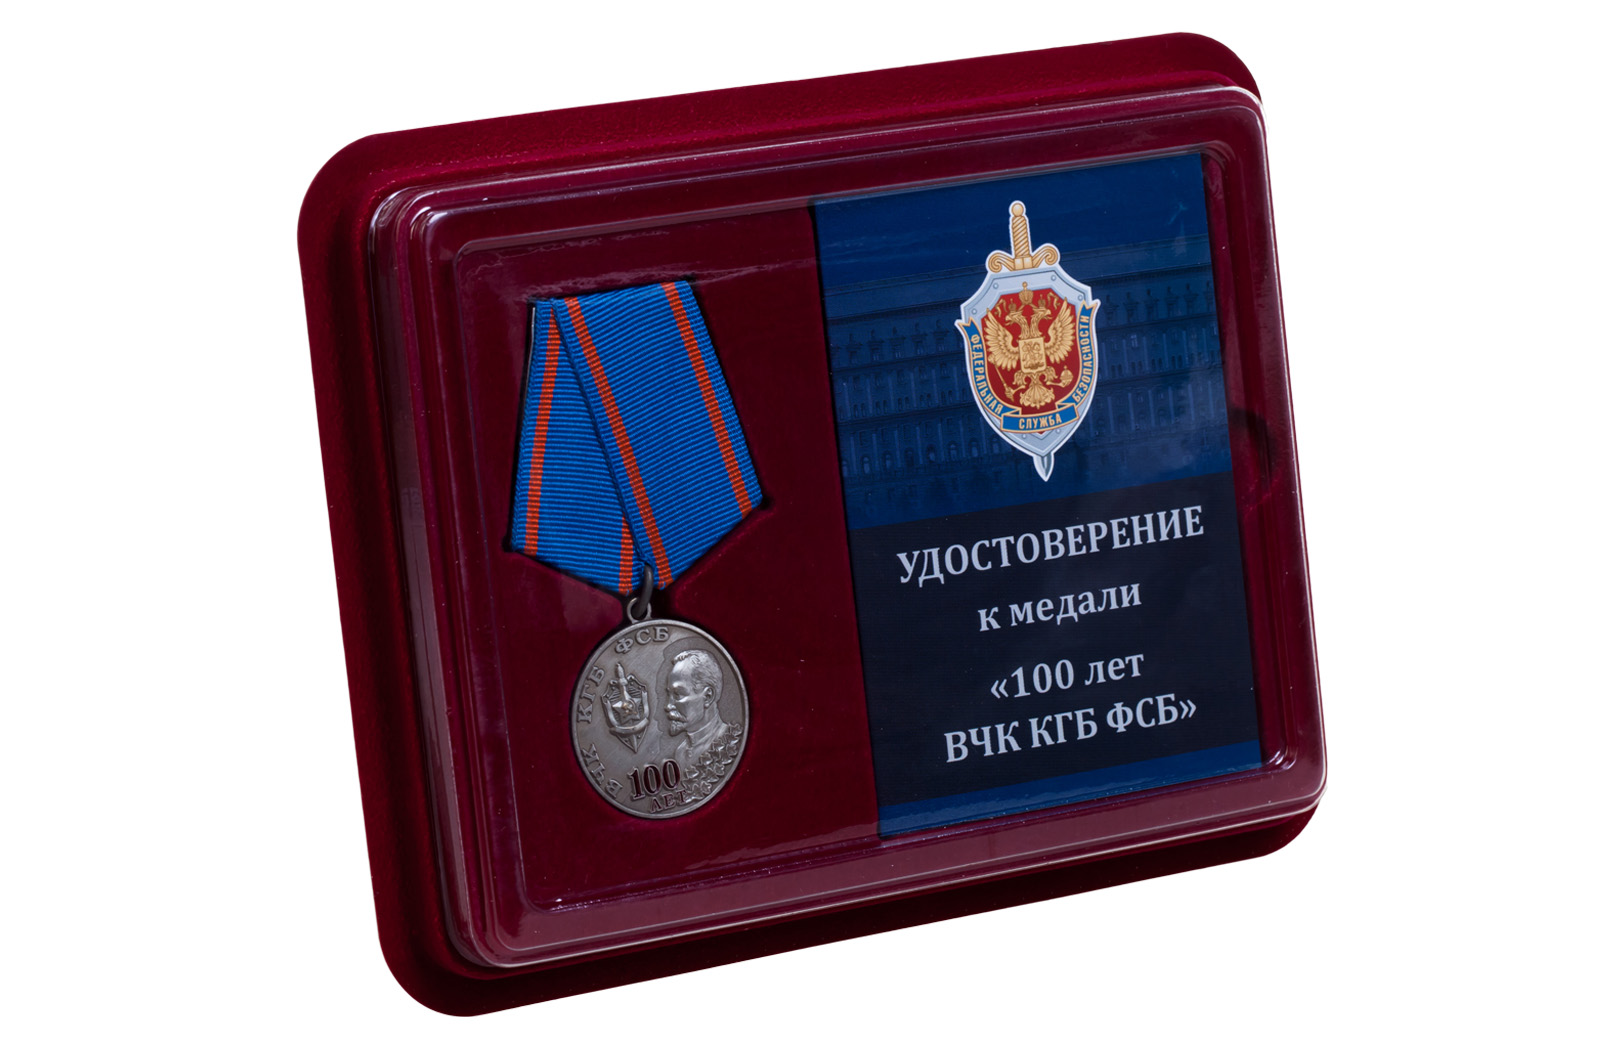 Памятная медаль "100 лет ВЧК КГБ ФСБ" 